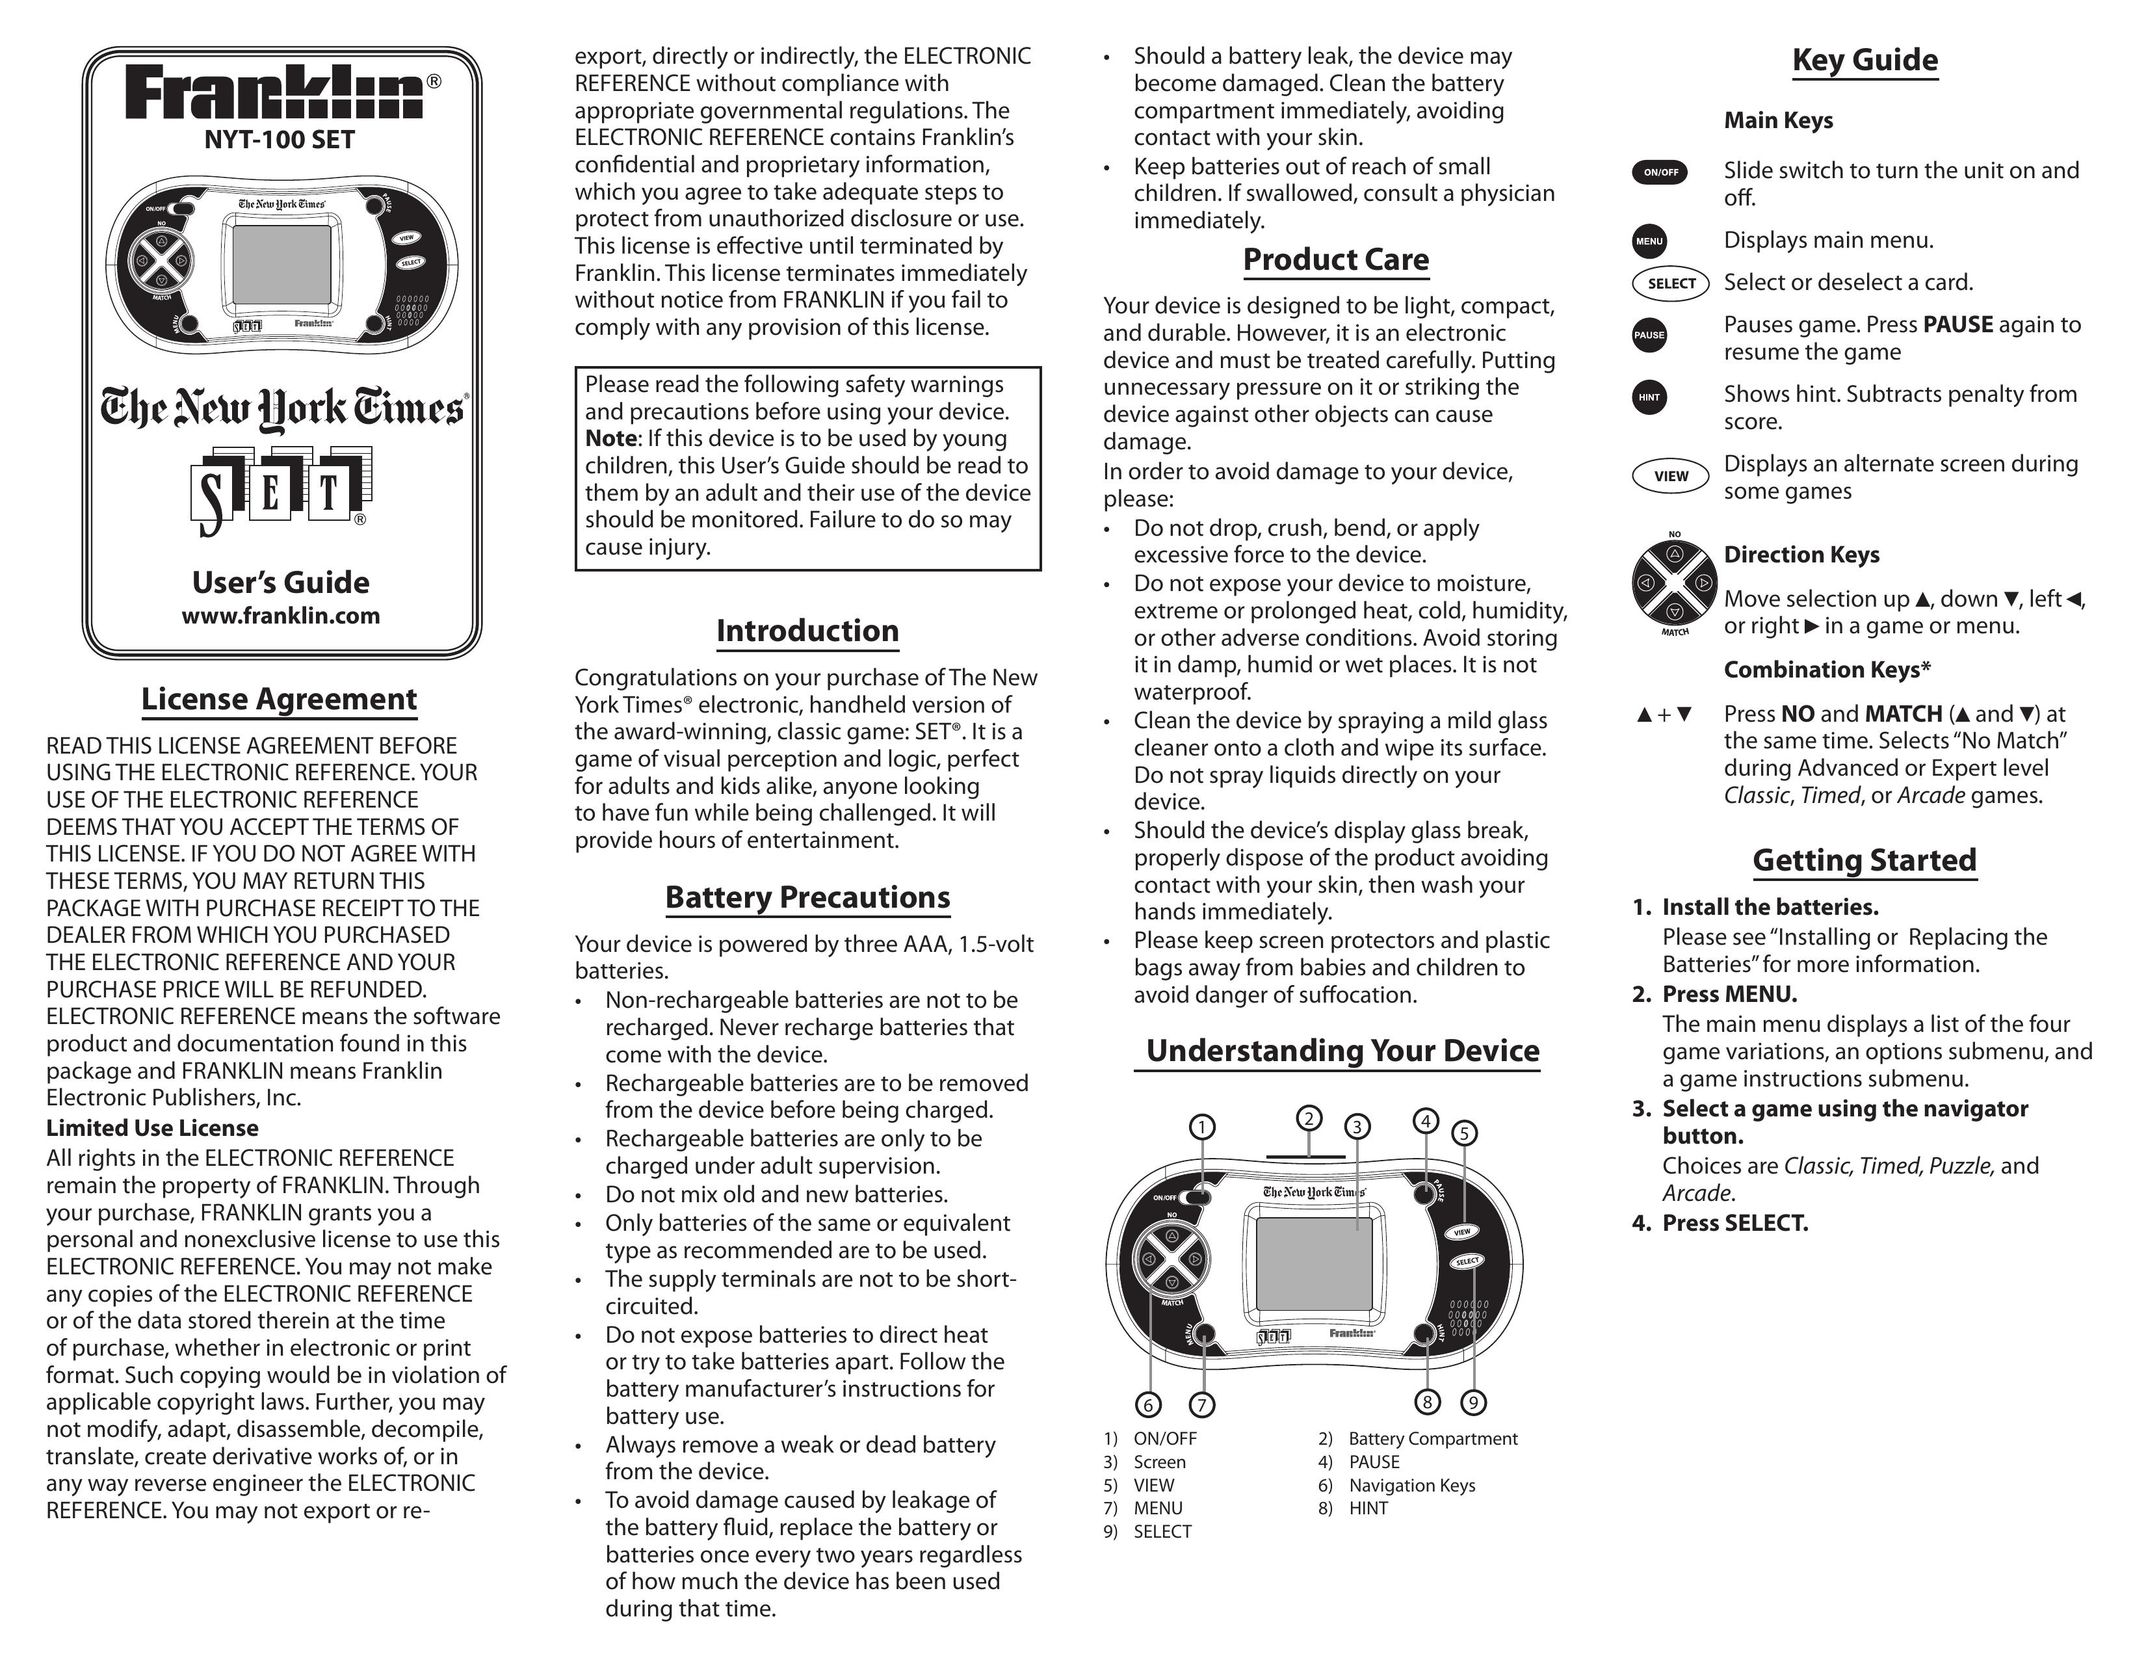 Franklin NYT-100 Handheld Game System User Manual